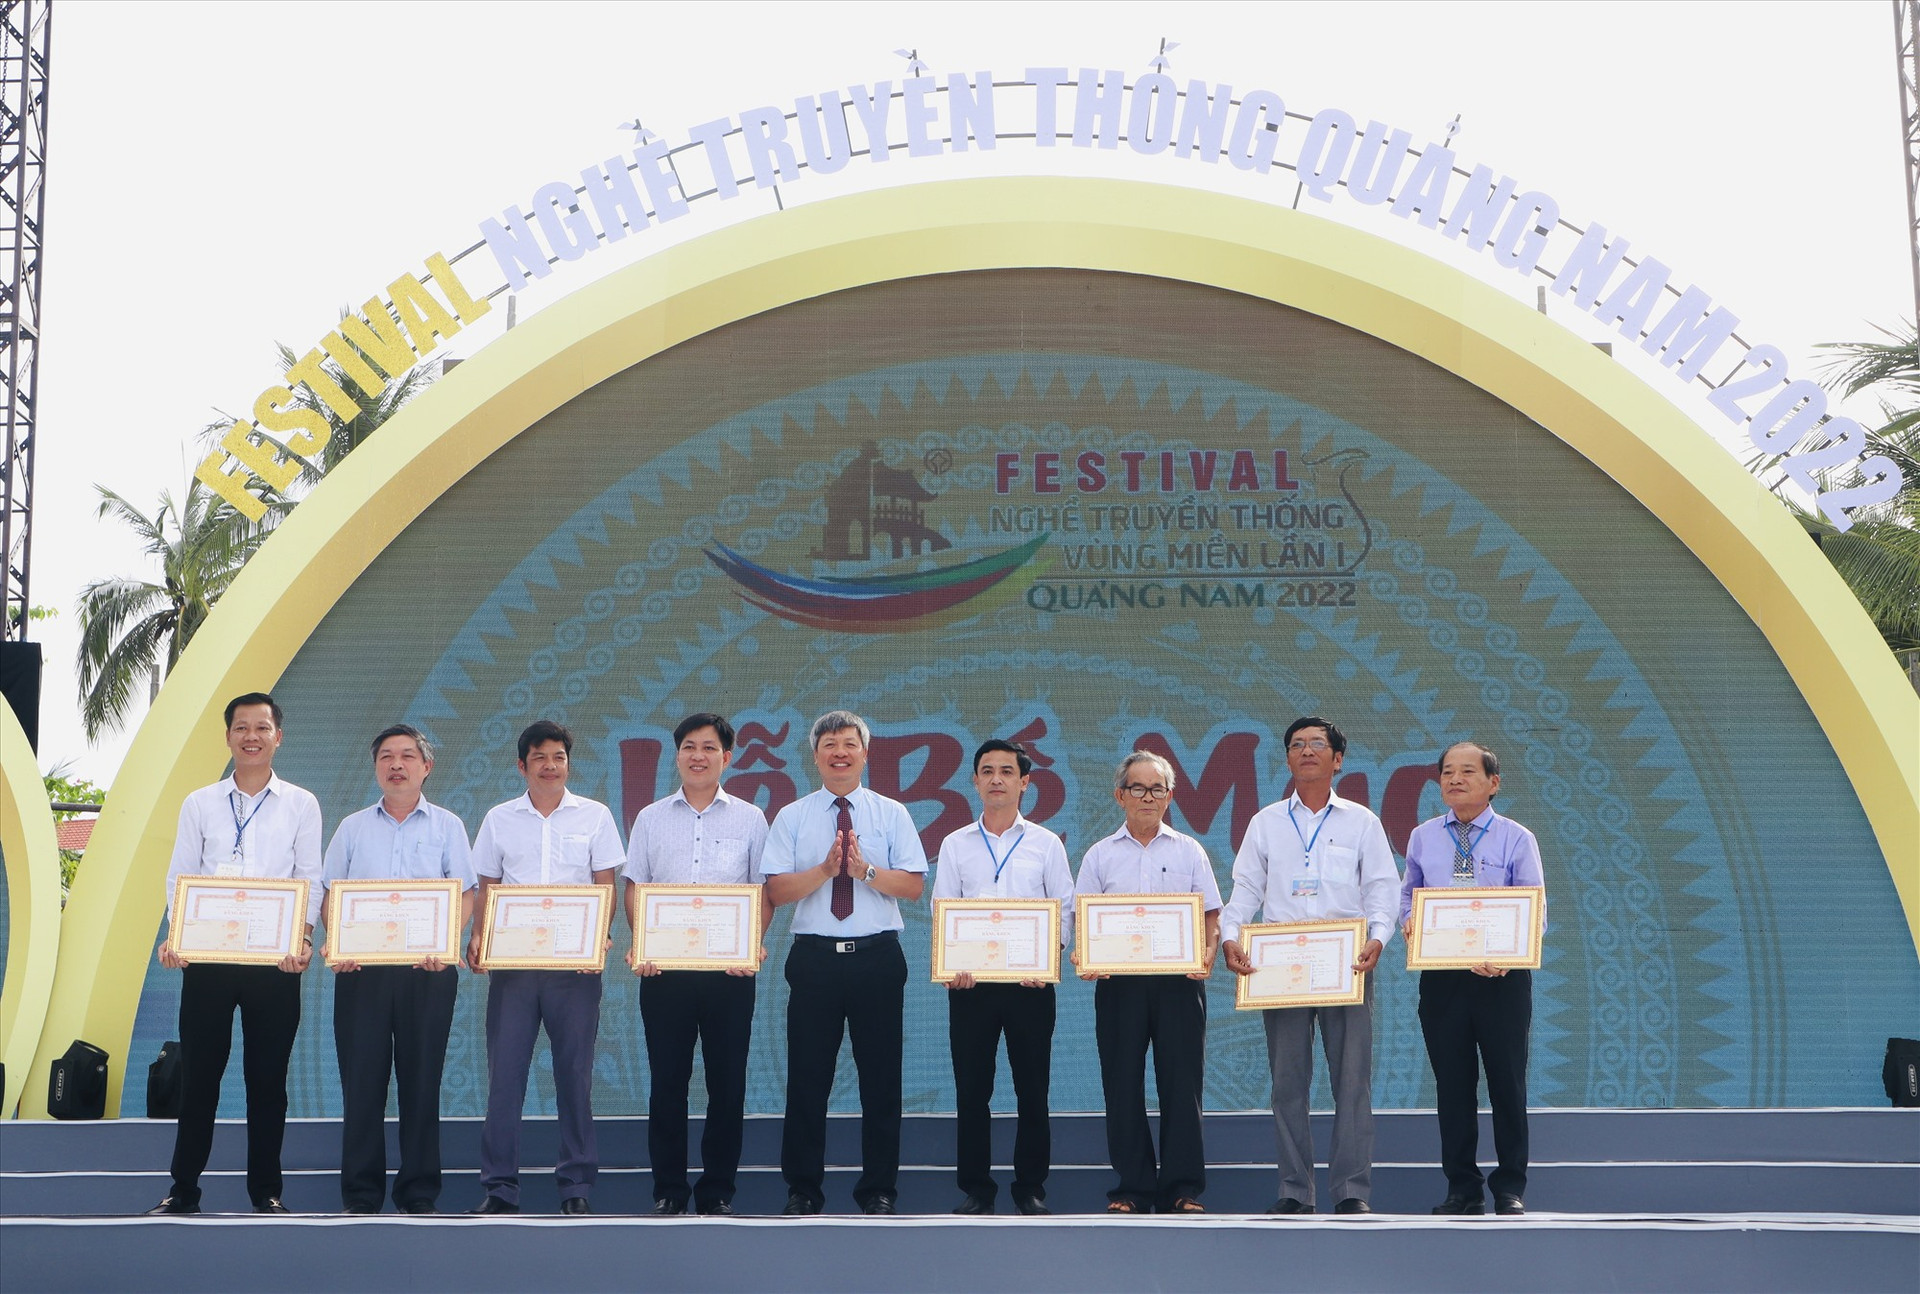 Phó Chủ tịch UBND tỉnh Hồ Quang Bửu tặng bằng khen của Chủ tịch UBND tỉnh cho các tập thể, cá nhân có đóng góp xuất sắc cho Festival Nghề truyền thống vùng miền lần thứ nhất. Ảnh: Q.T